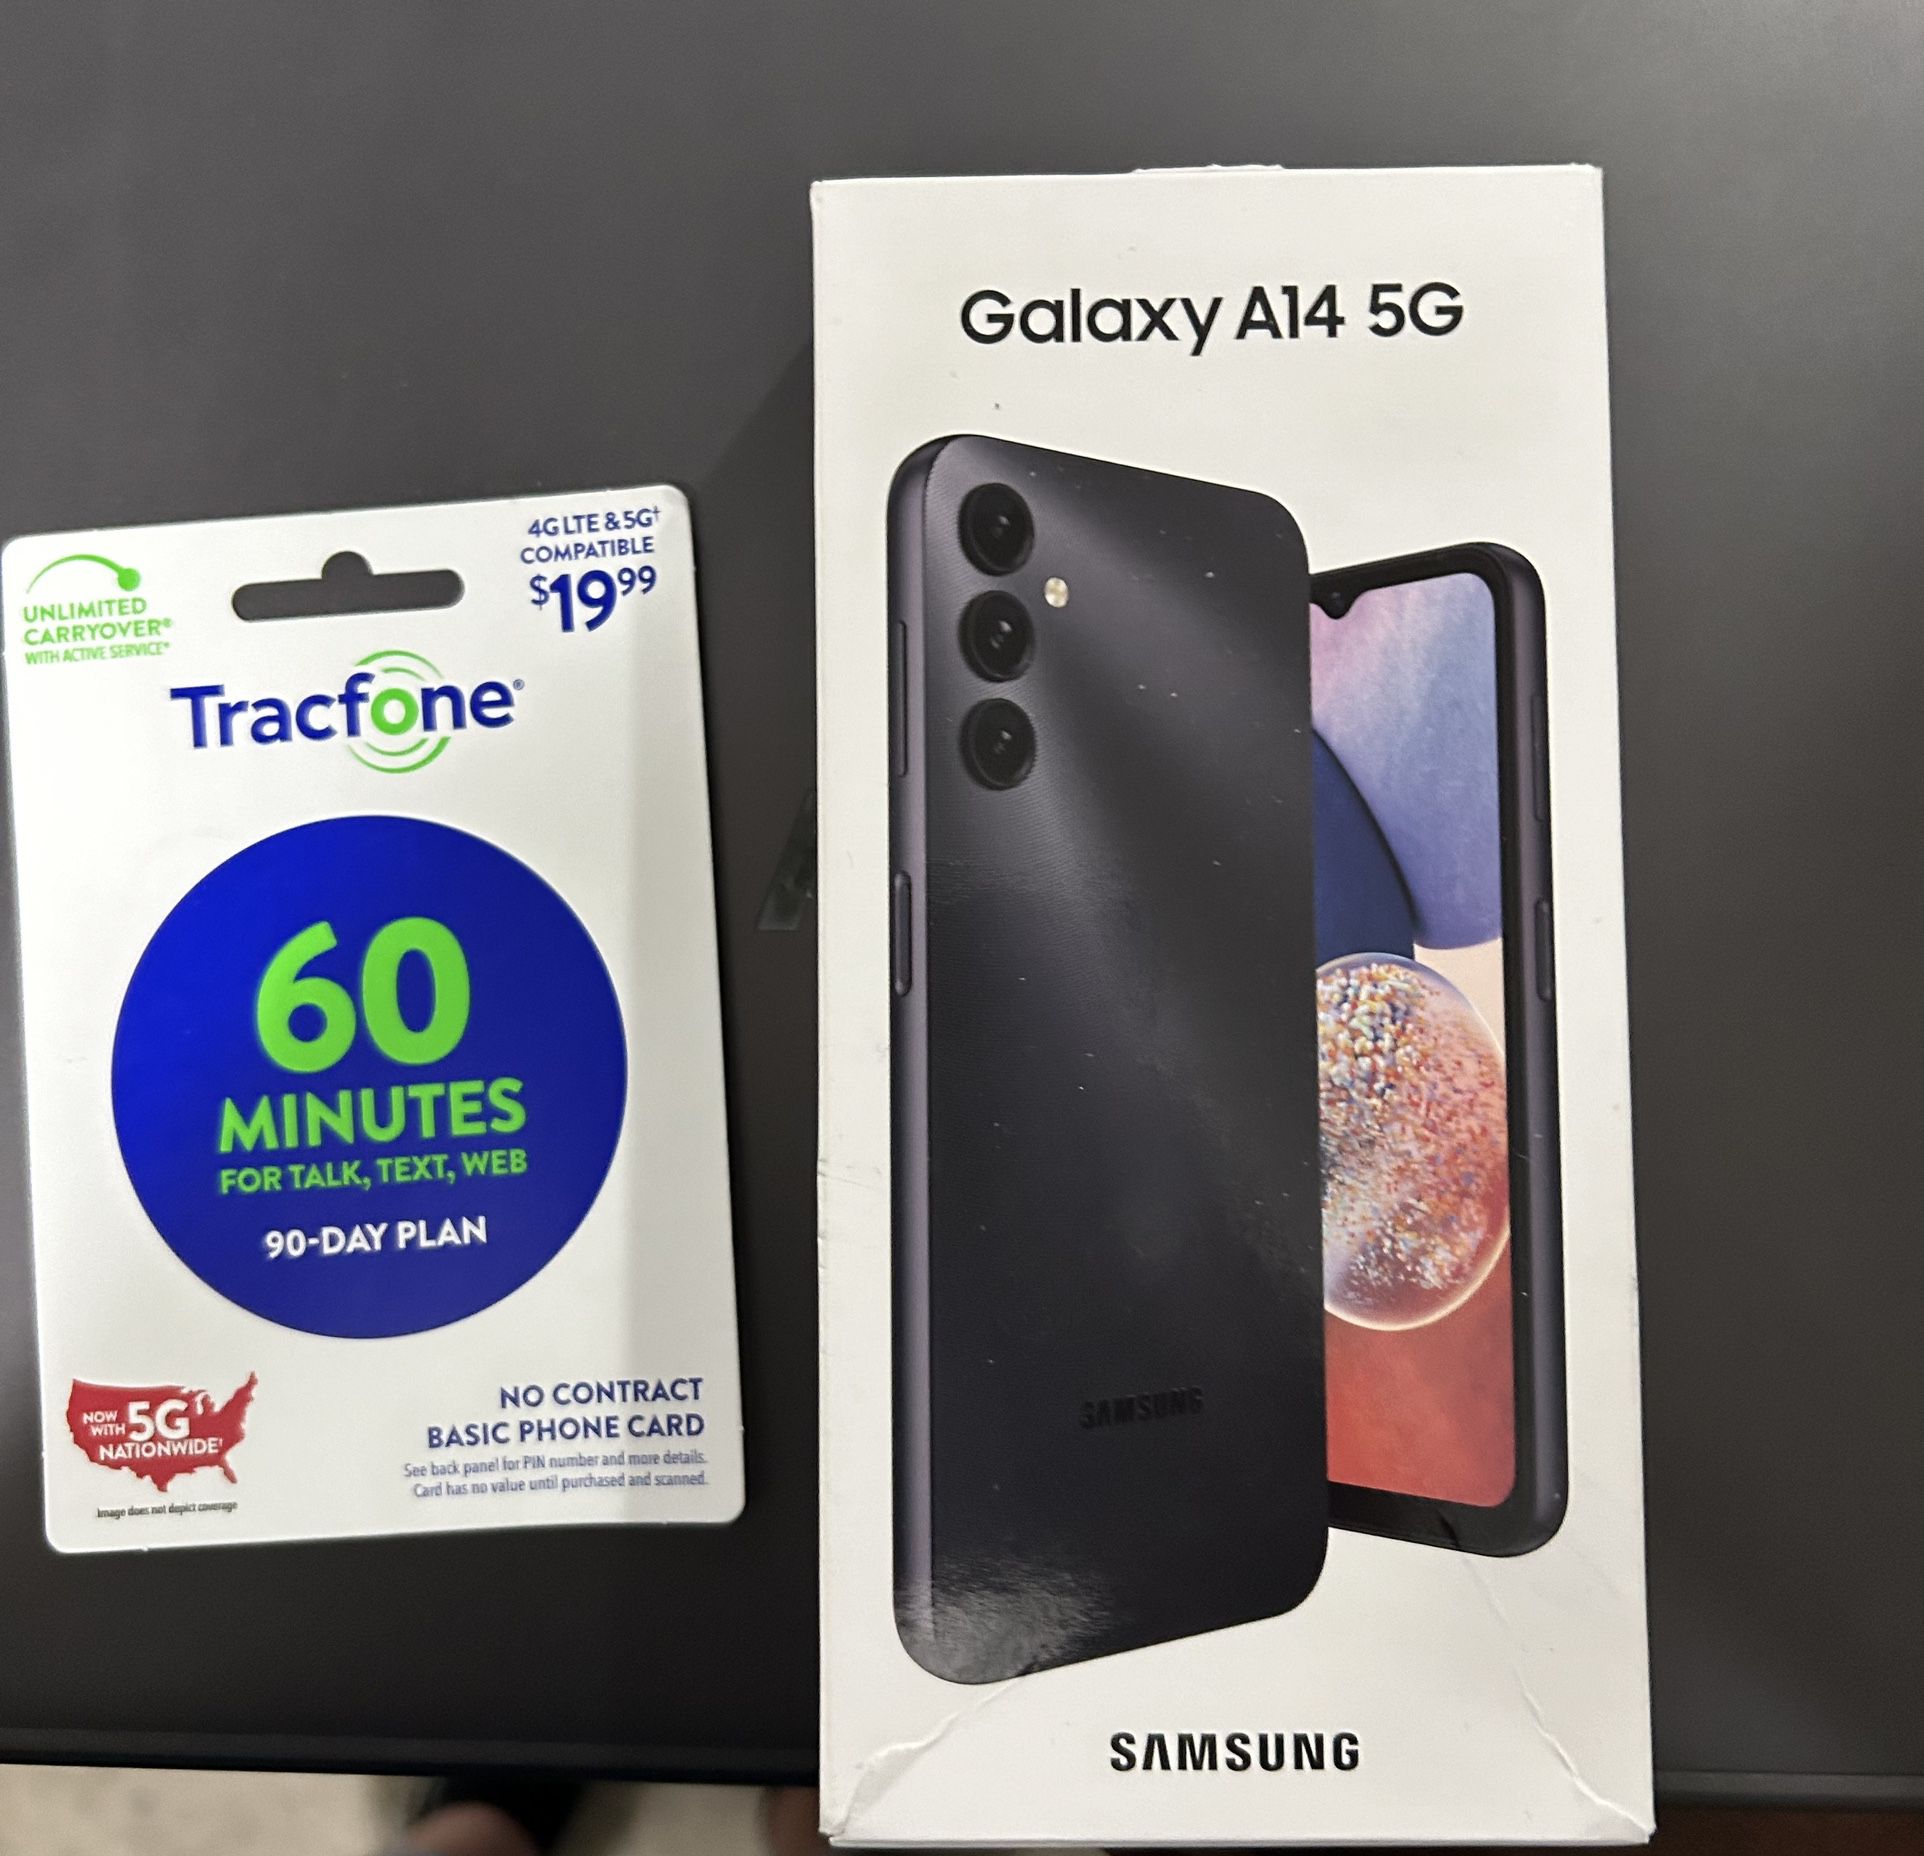 Samsung galaxy Phone & 60 Minutes Of Prepaid Data